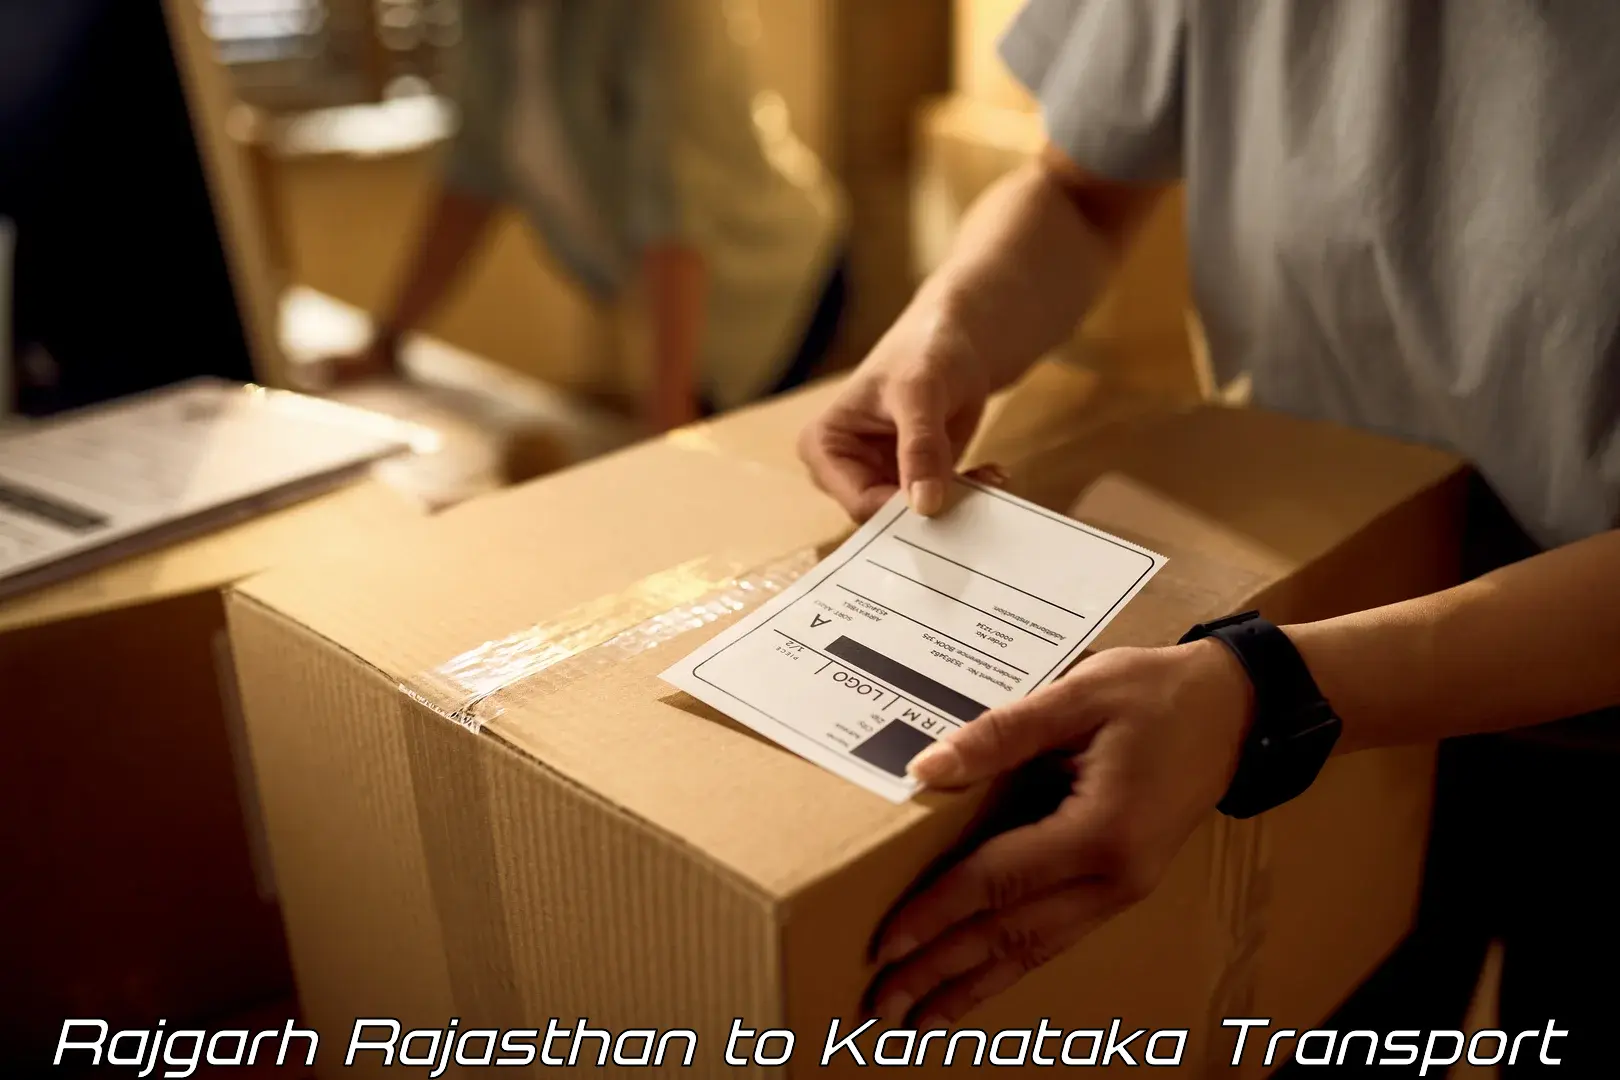 Luggage transport services Rajgarh Rajasthan to Karnataka